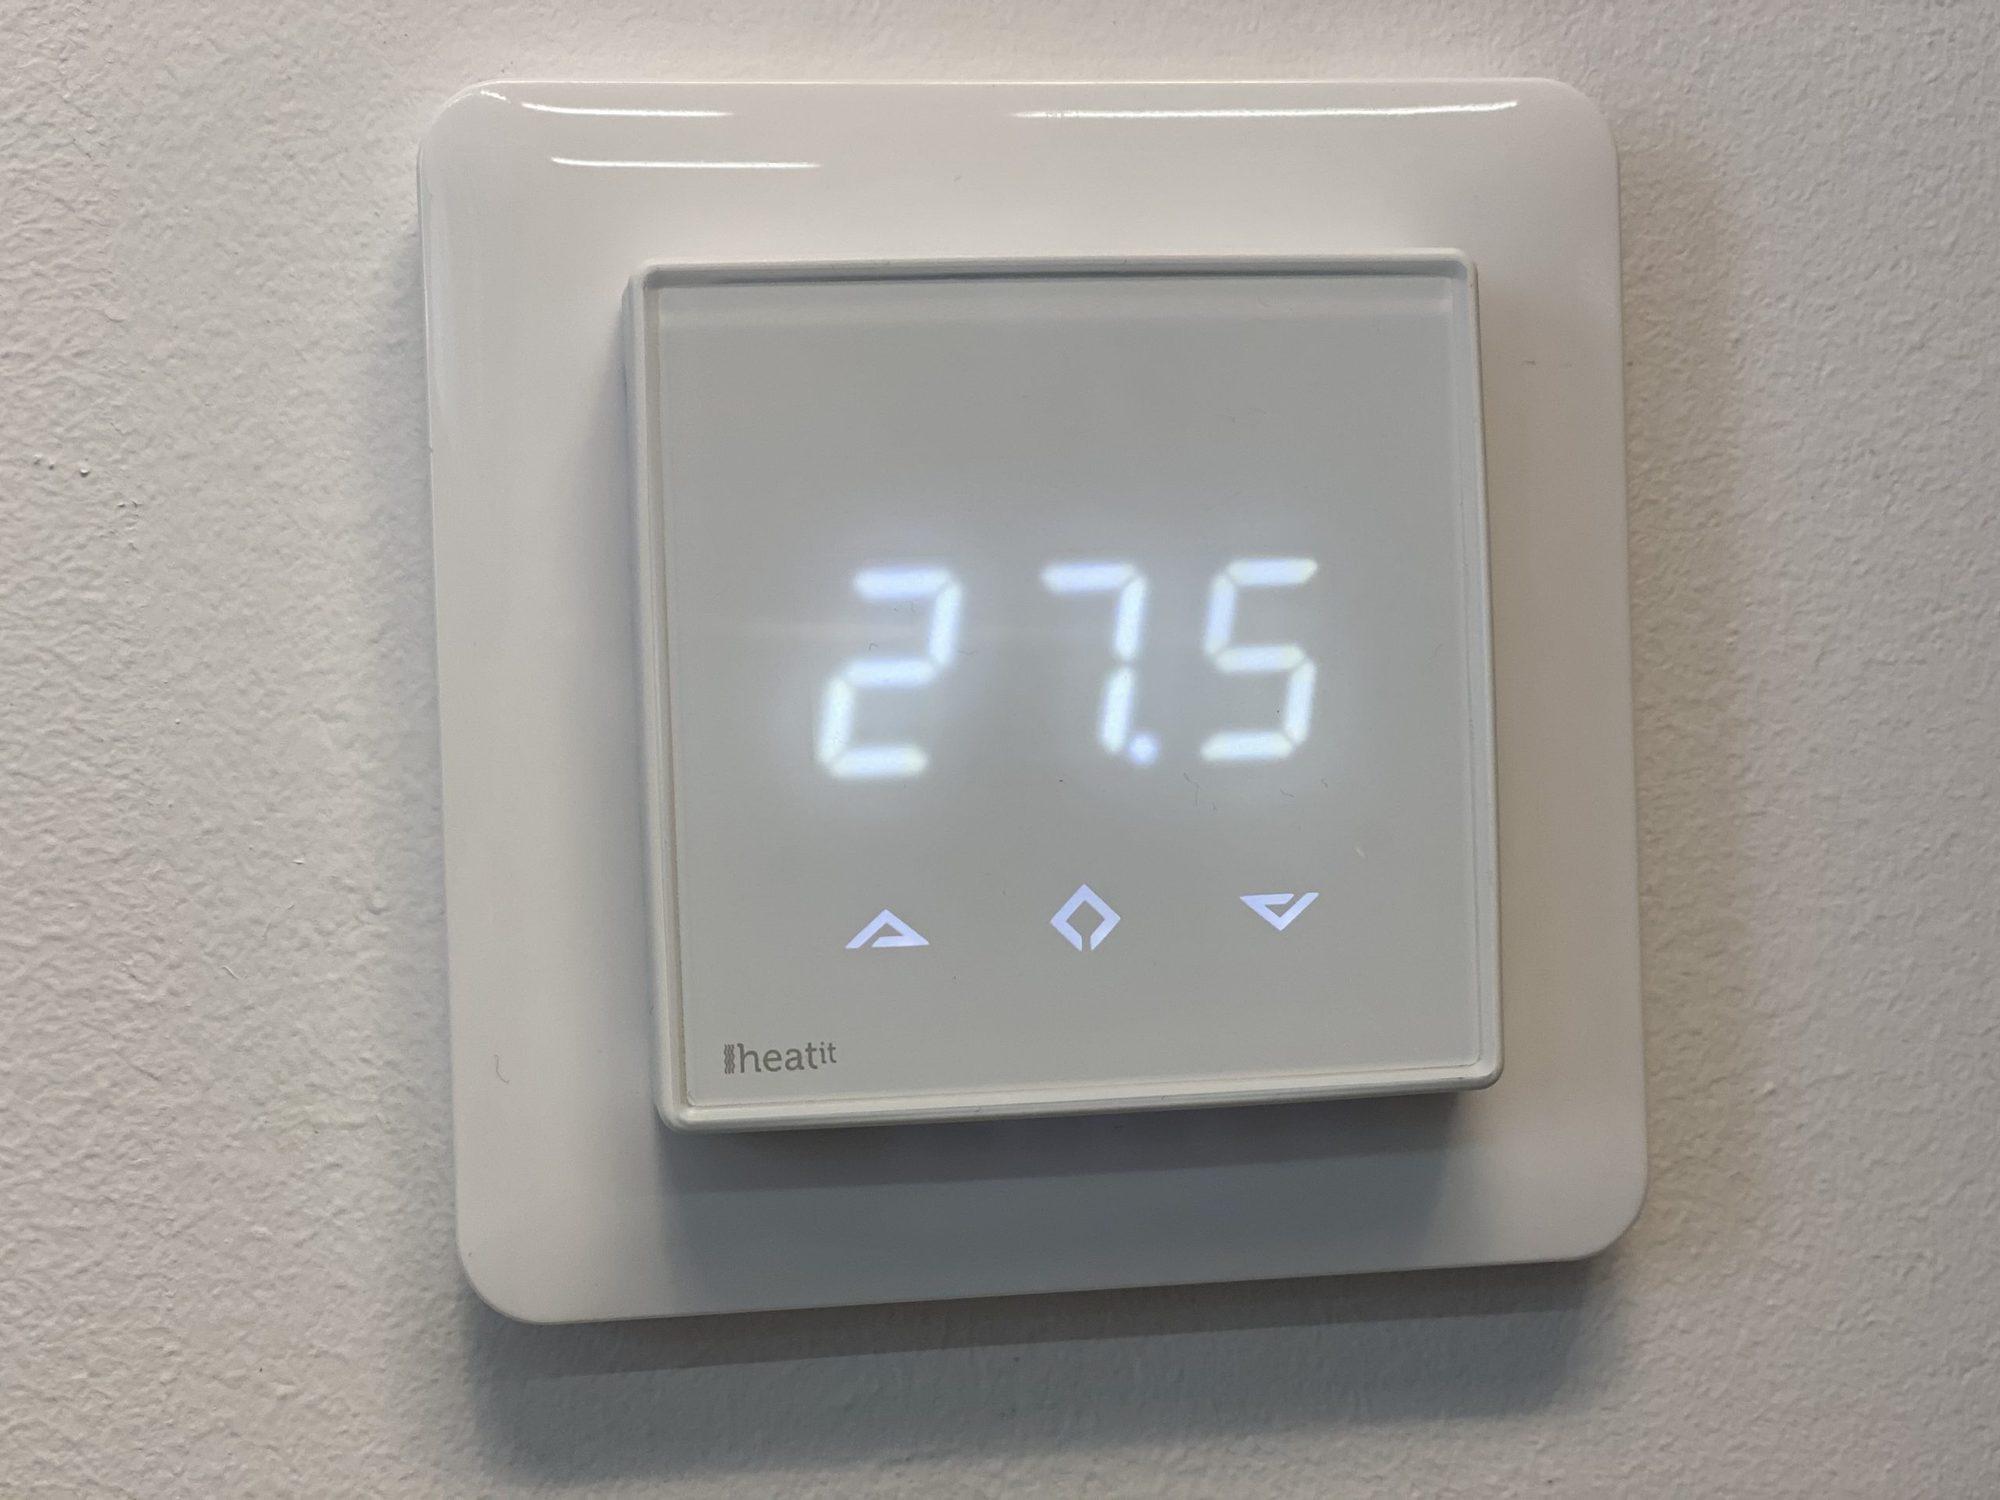 Heatit thermostat